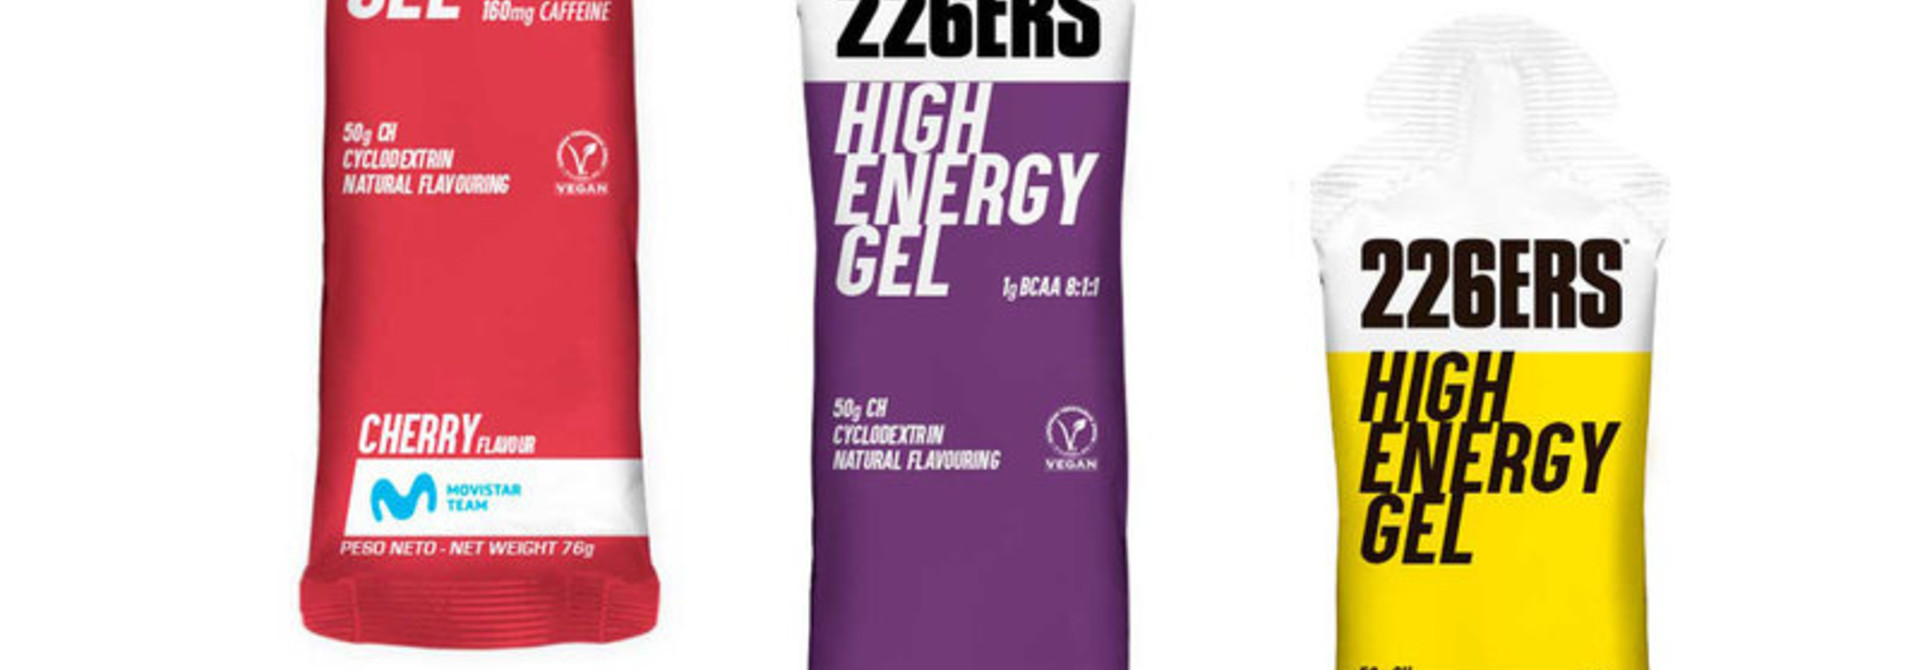 De 226ERS High Energy Gel | Ontwikkeld met het Movistar Cycling Team